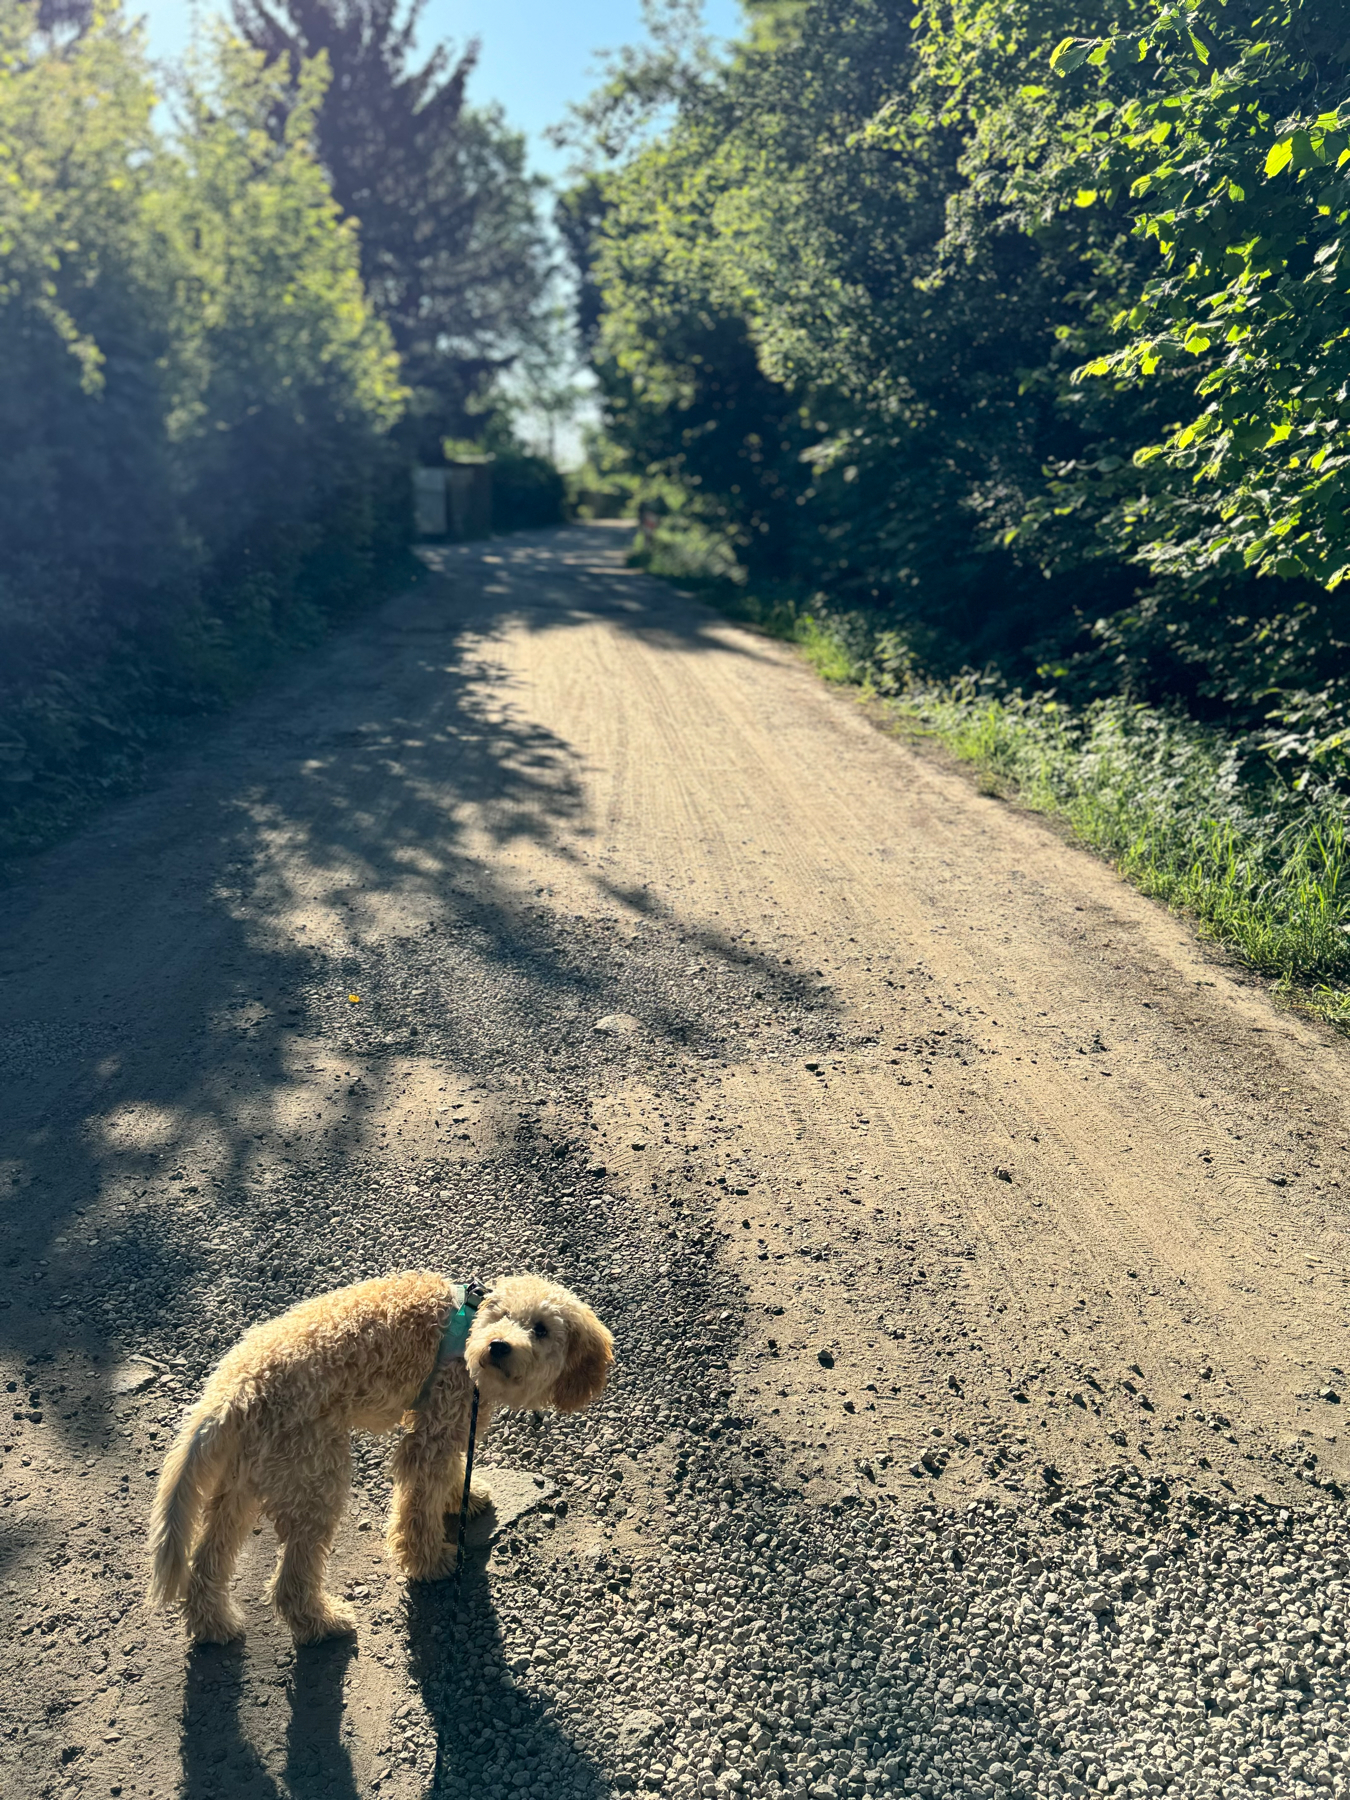 Mein Hund Milo steht auf dem Weg und blickt nach hinten. Der Weg ist sandig. Im Hintergrund sieht man grüne Bäume. Es wirkt sehr ländlich.